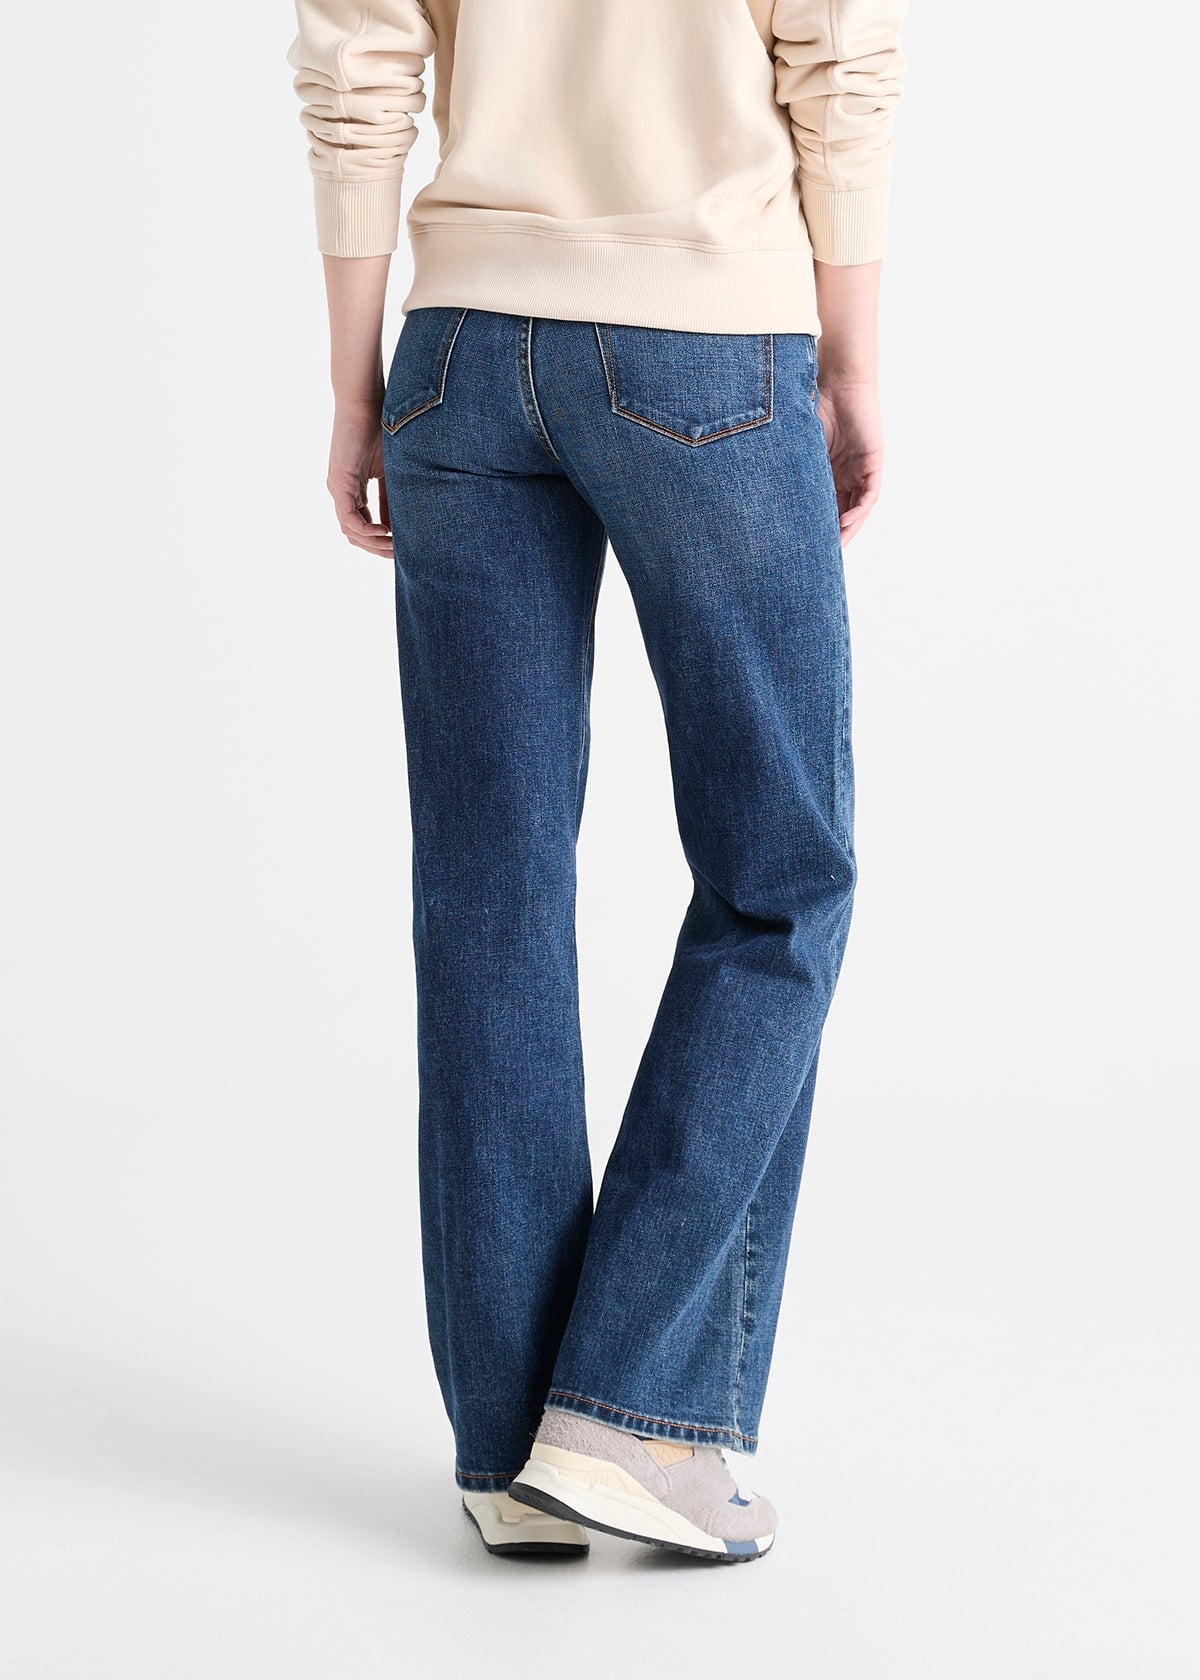 Women's Wide Leg Dark blue stretch jeans back